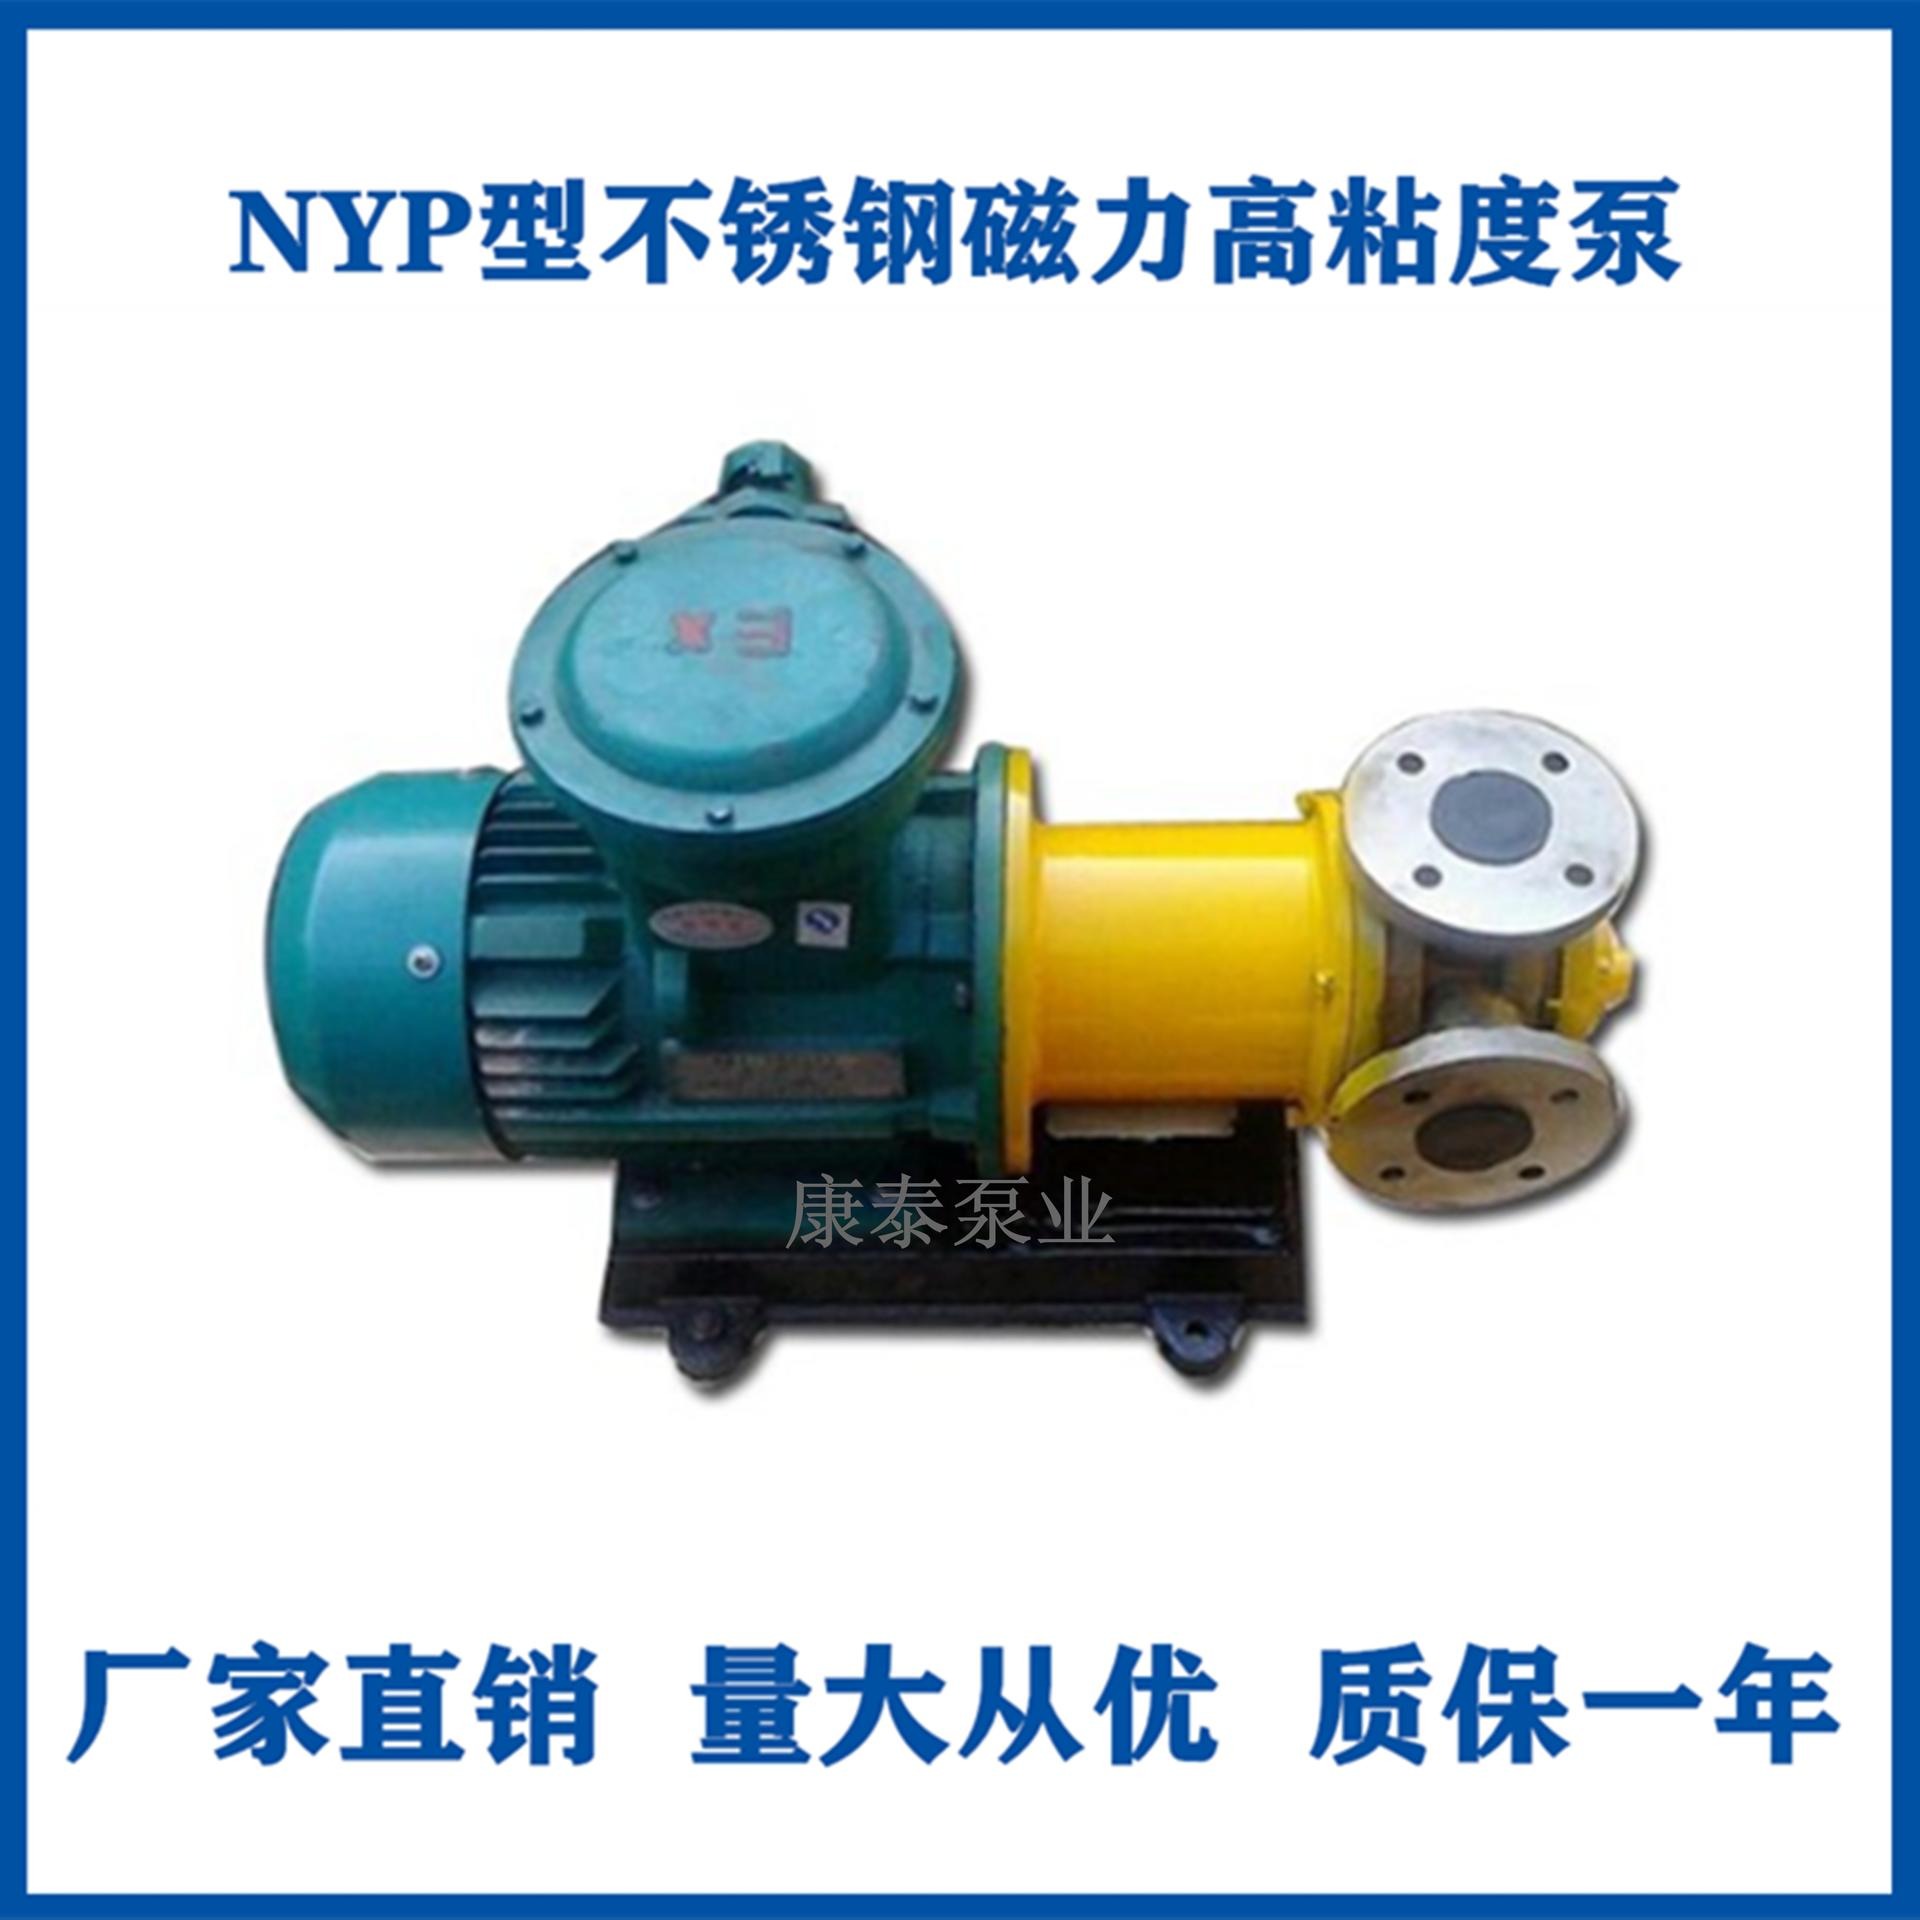 高粘度泵 高粘度不锈钢磁力泵 NYP内环式高粘度转子泵